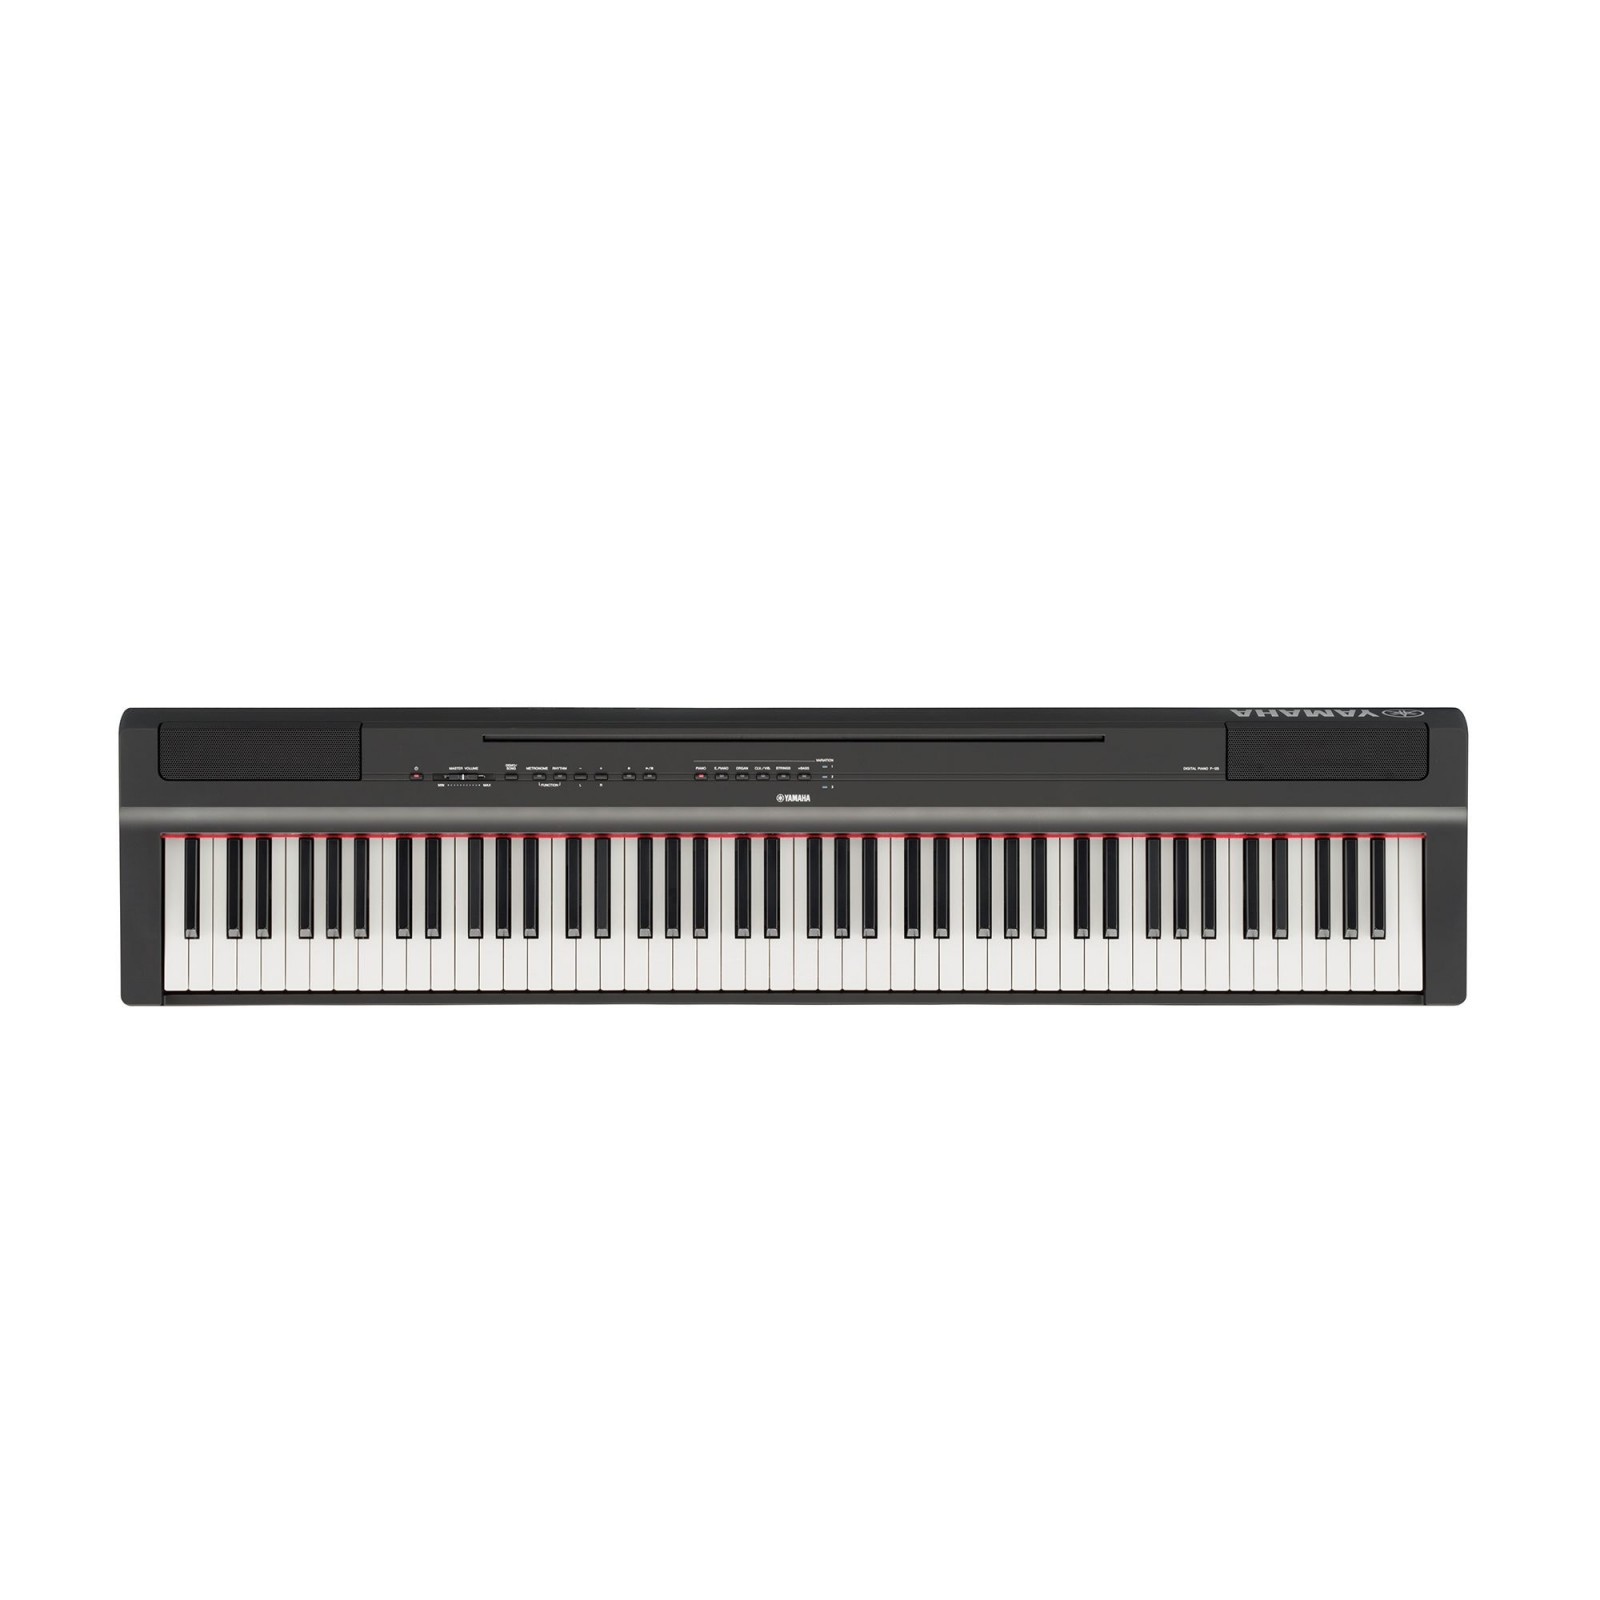 Korg Lp-180 noir - Piano numérique avec stand - 88 touches, Piano